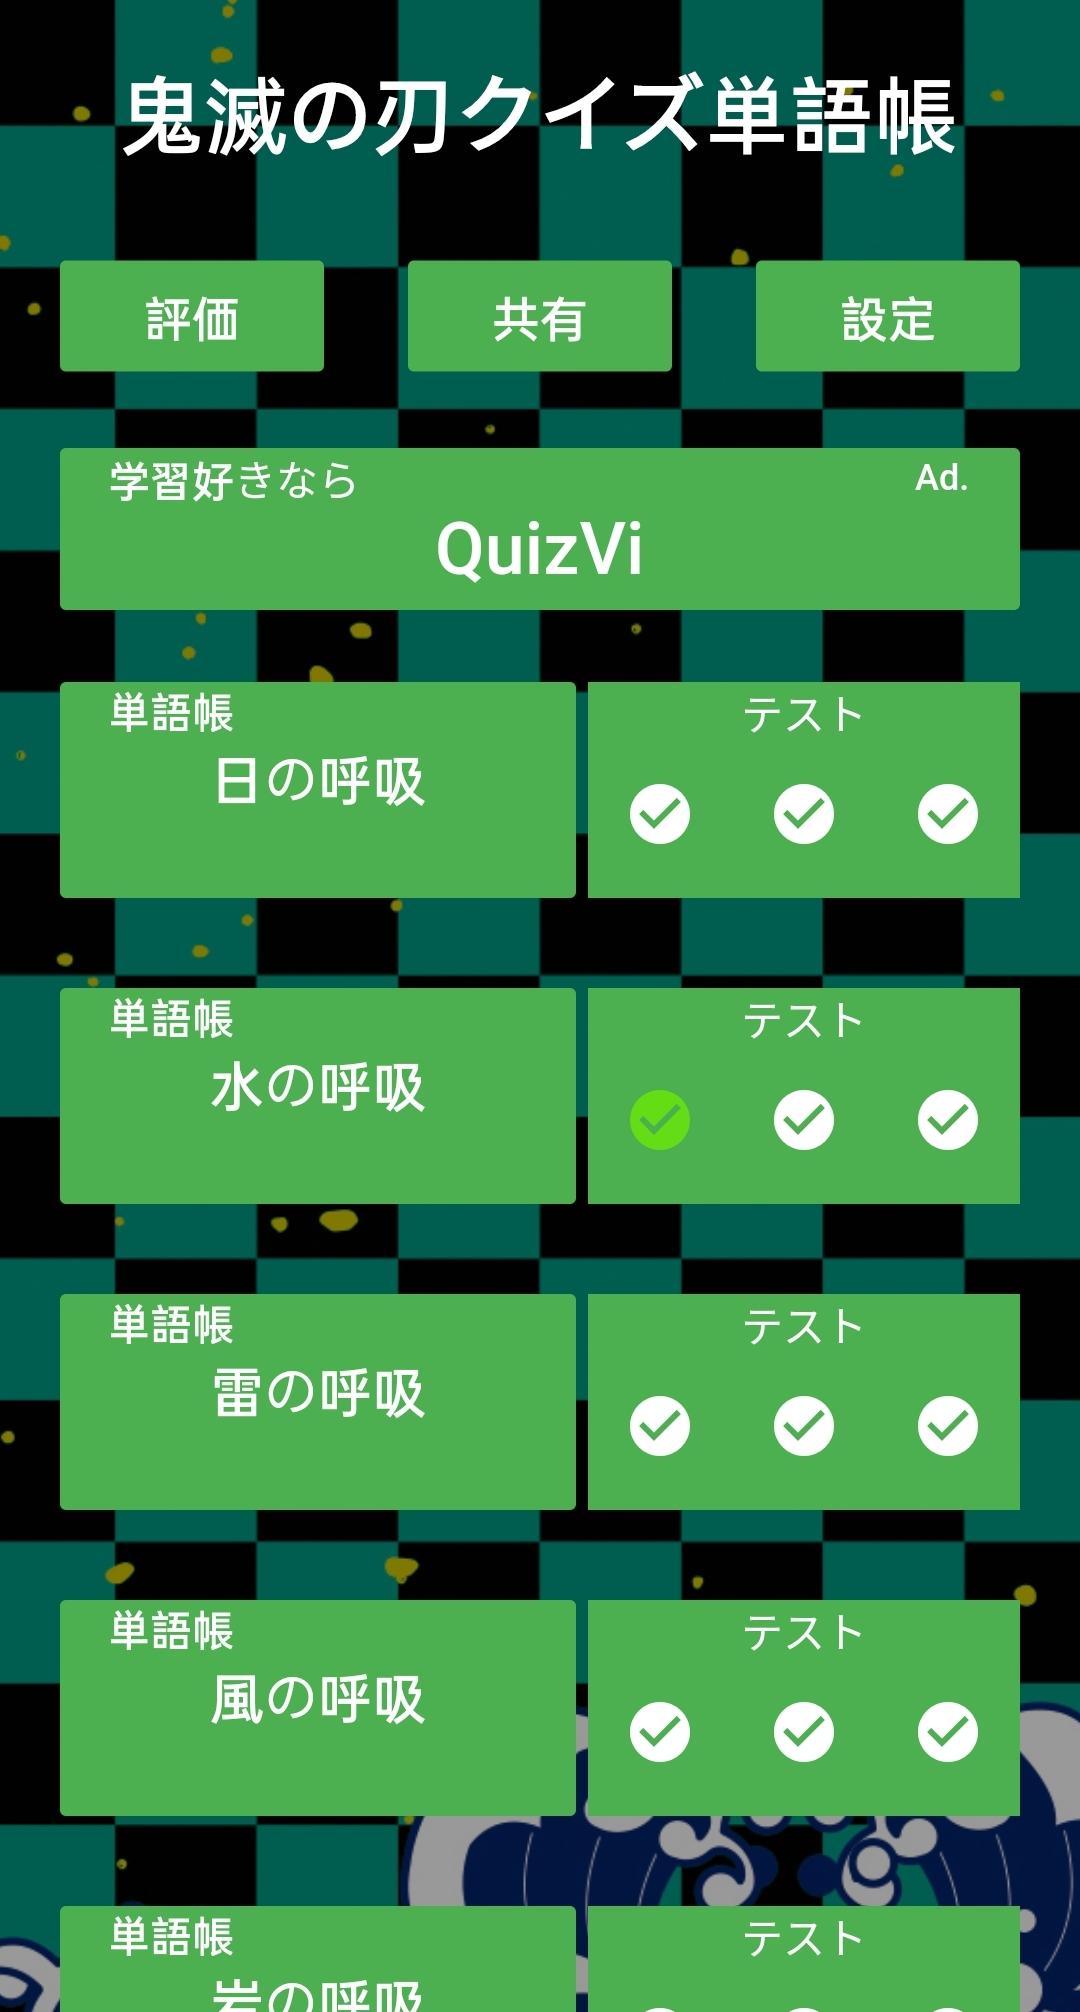 鬼滅の刃クイズ単語帳 きめつのやいば For Android Apk Download